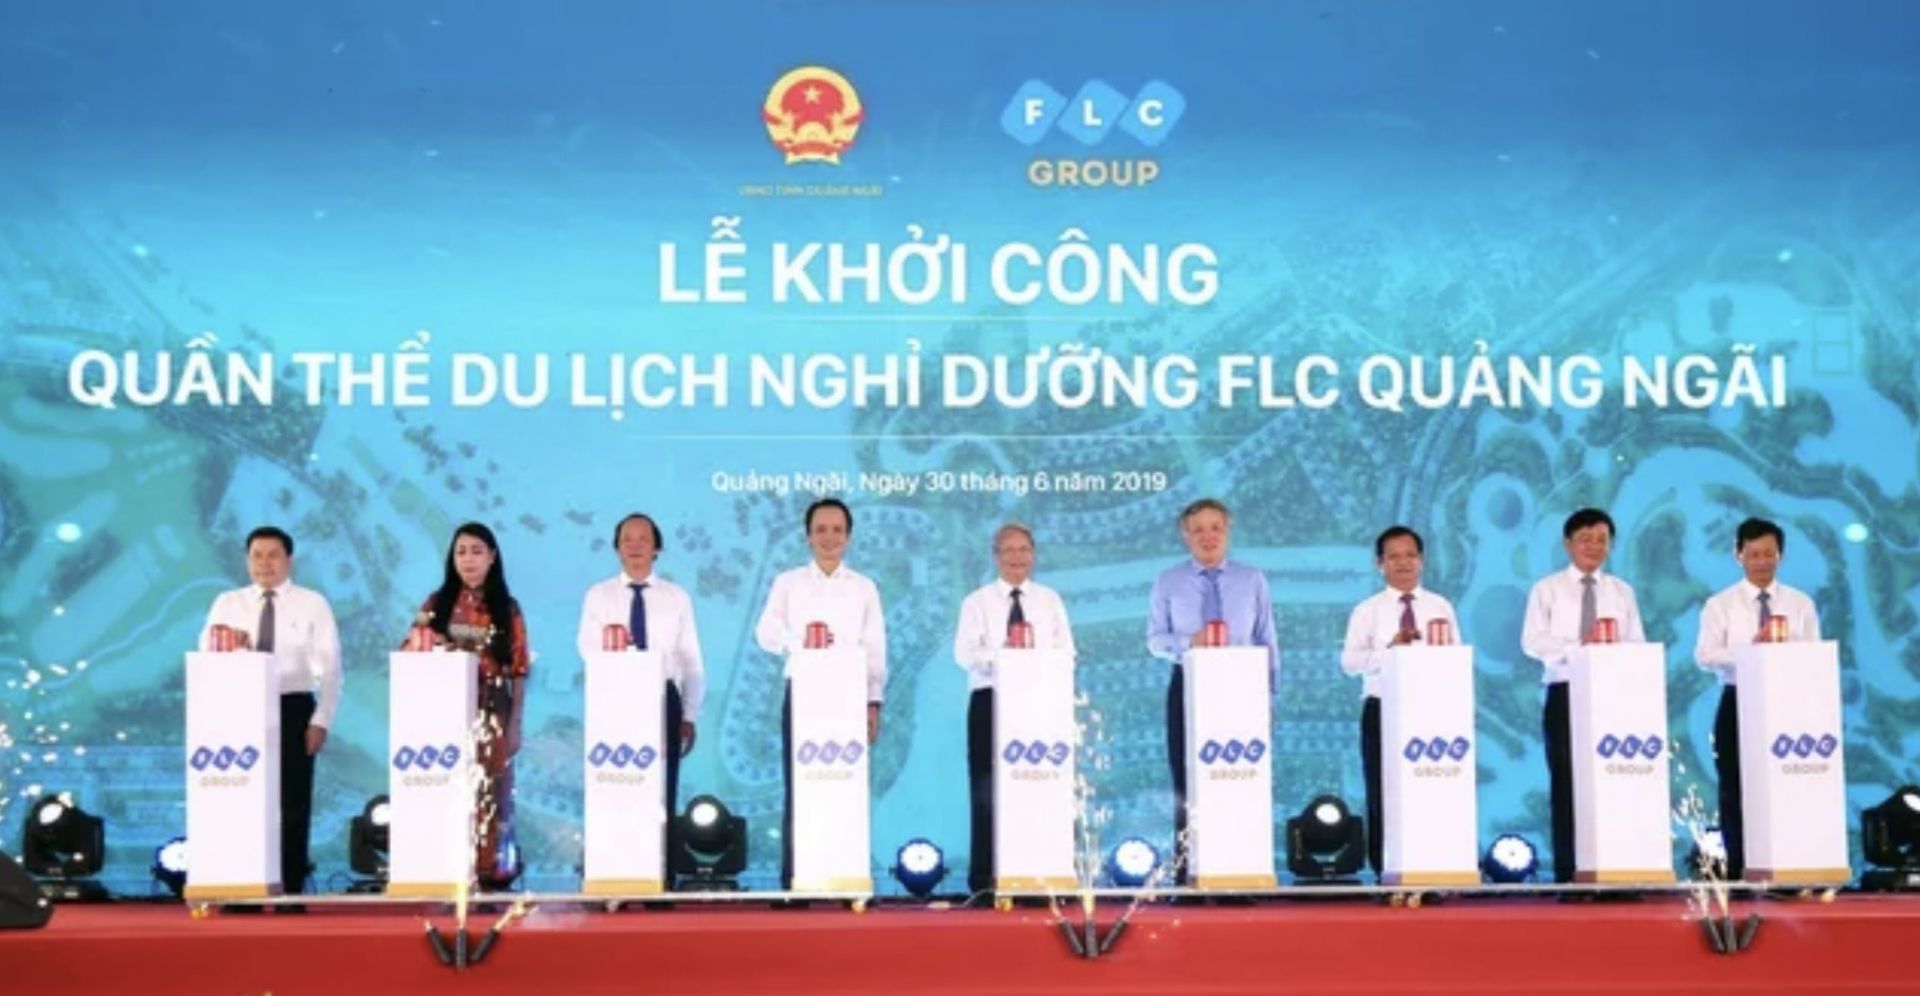 Trước đó vào tháng 6.2019 FLC đã tổ chức lễ khởi công quần thể du lịch nghỉ dưỡng  Quảng Ngãi với tổng diện tích gần 4000 ha